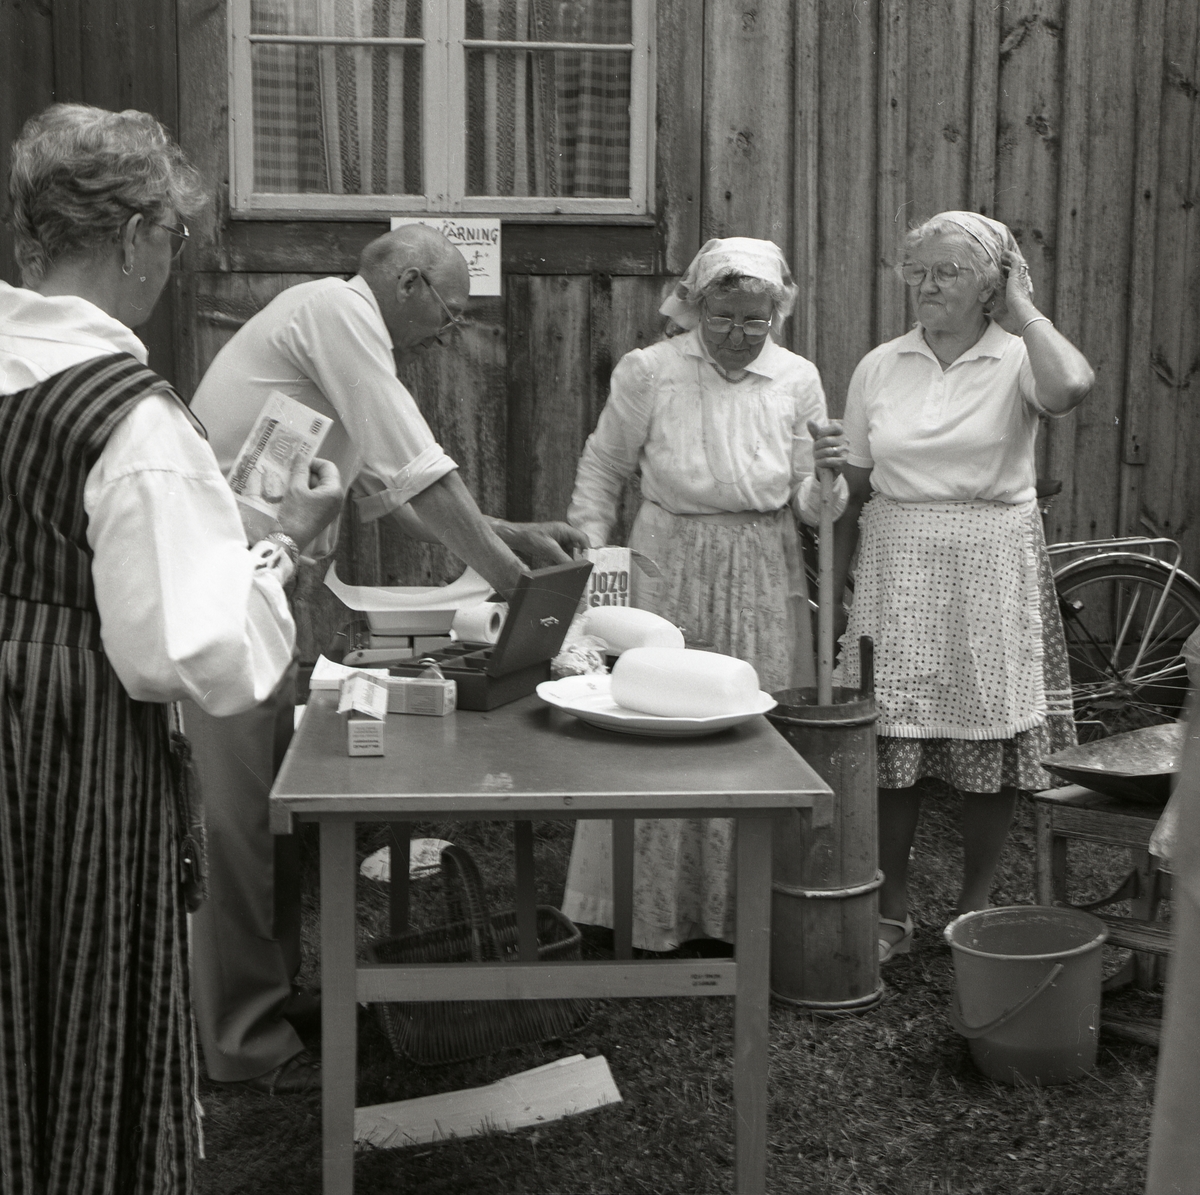 Försäljning av bakverk på Rengsjöfesten, 14 juli 1985. Intill försäljningsbordet kärnar två kvinnor smör.